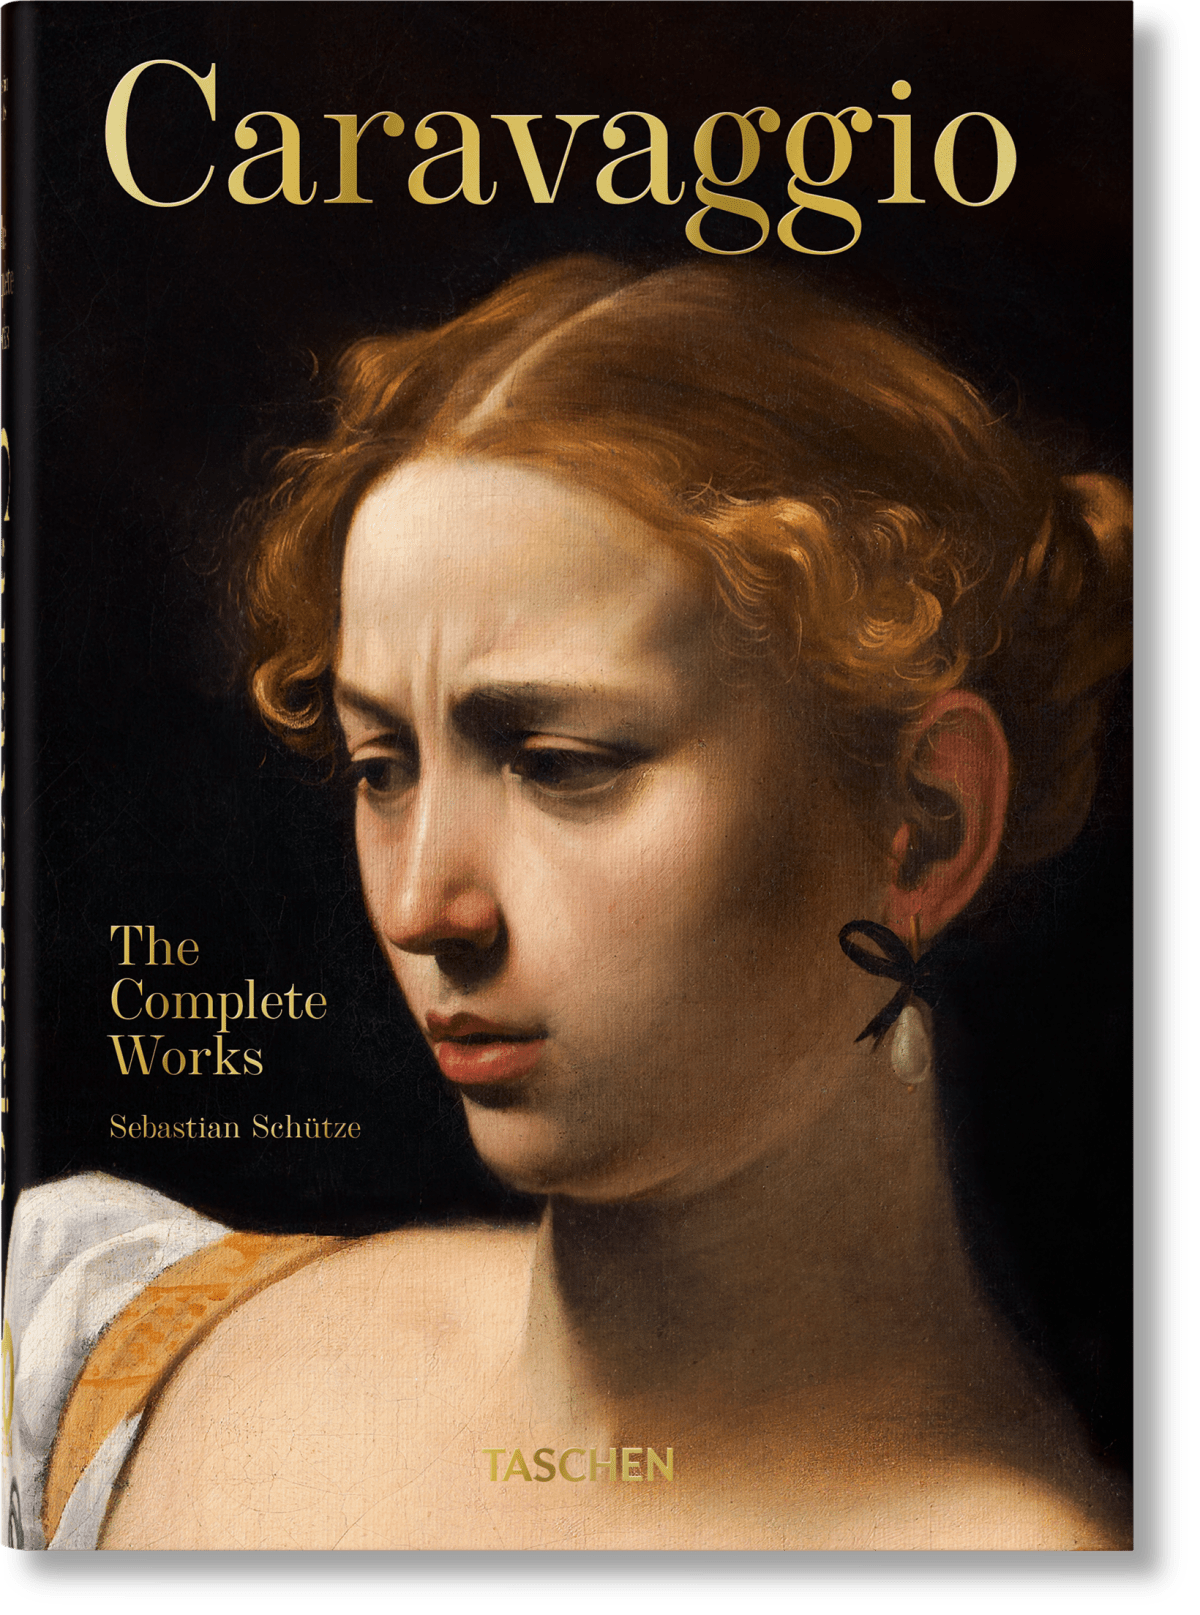 Taschen Caravaggio The Complete Works Book by Sebastian Schutze